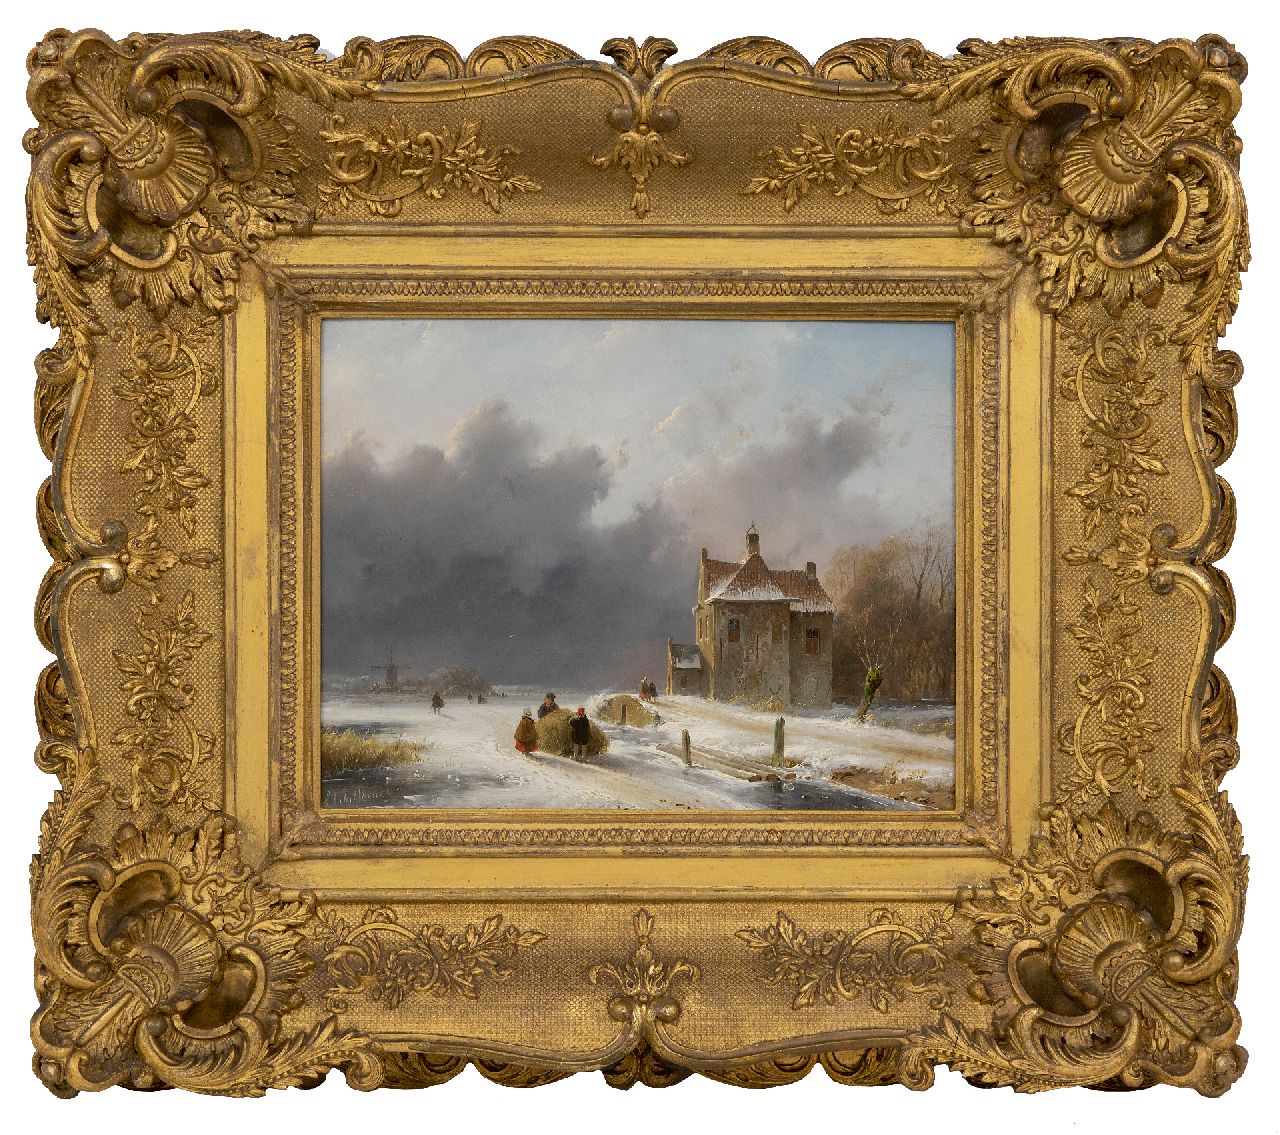 Schelfhout A.  | Andreas Schelfhout | Schilderijen te koop aangeboden | IJsgezicht met naderende sneeuwstorm (alleen tezamen met pendant zomer), olieverf op paneel 25,8 x 32,5 cm, gesigneerd linksonder